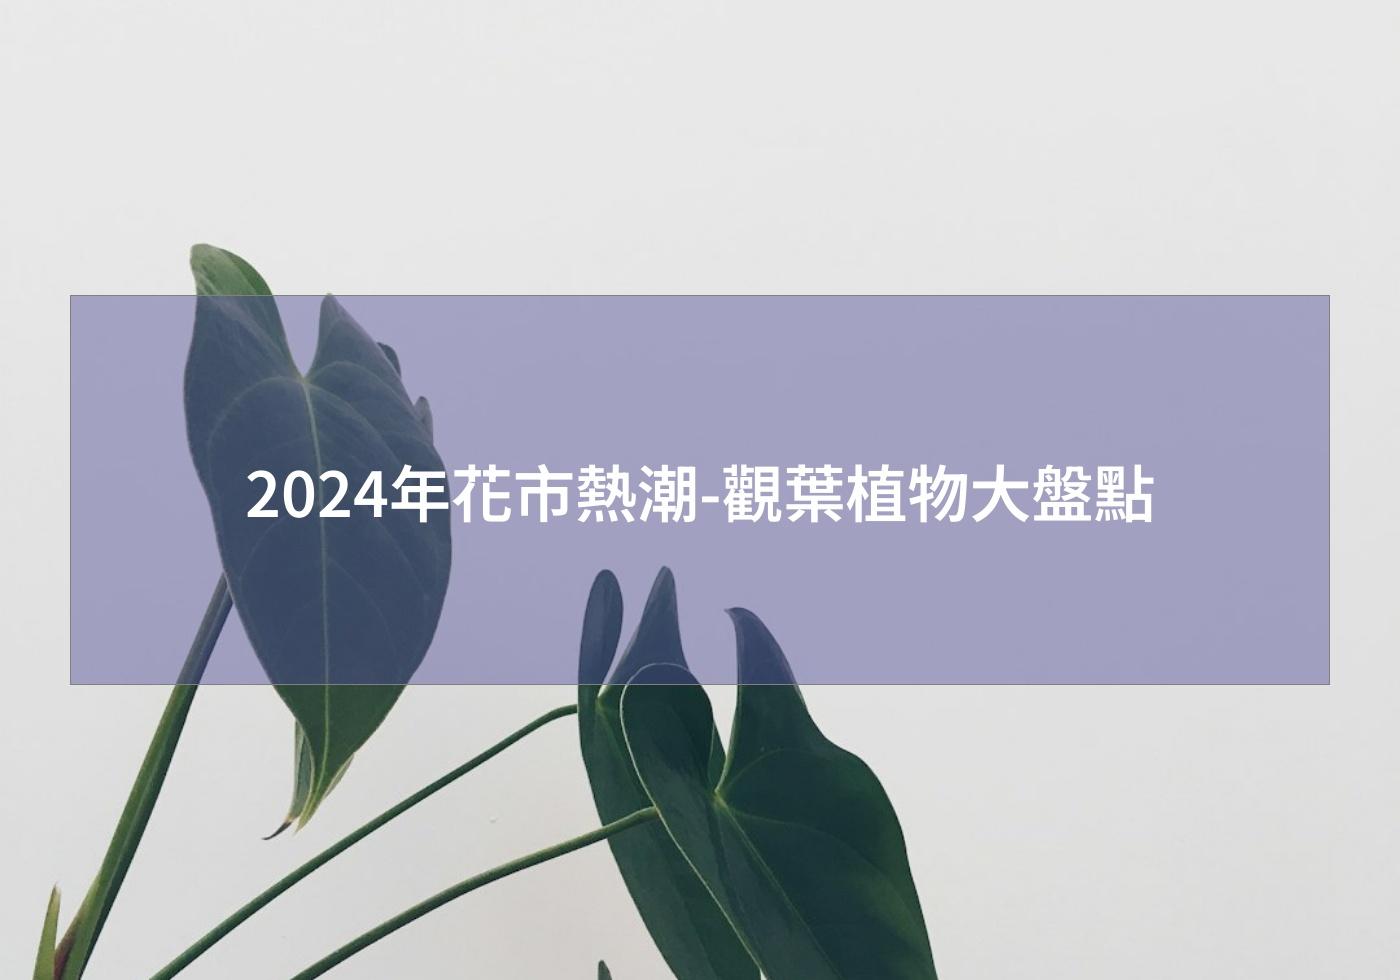 您目前正在查看 2024年花市熱潮-觀葉植物大盤點